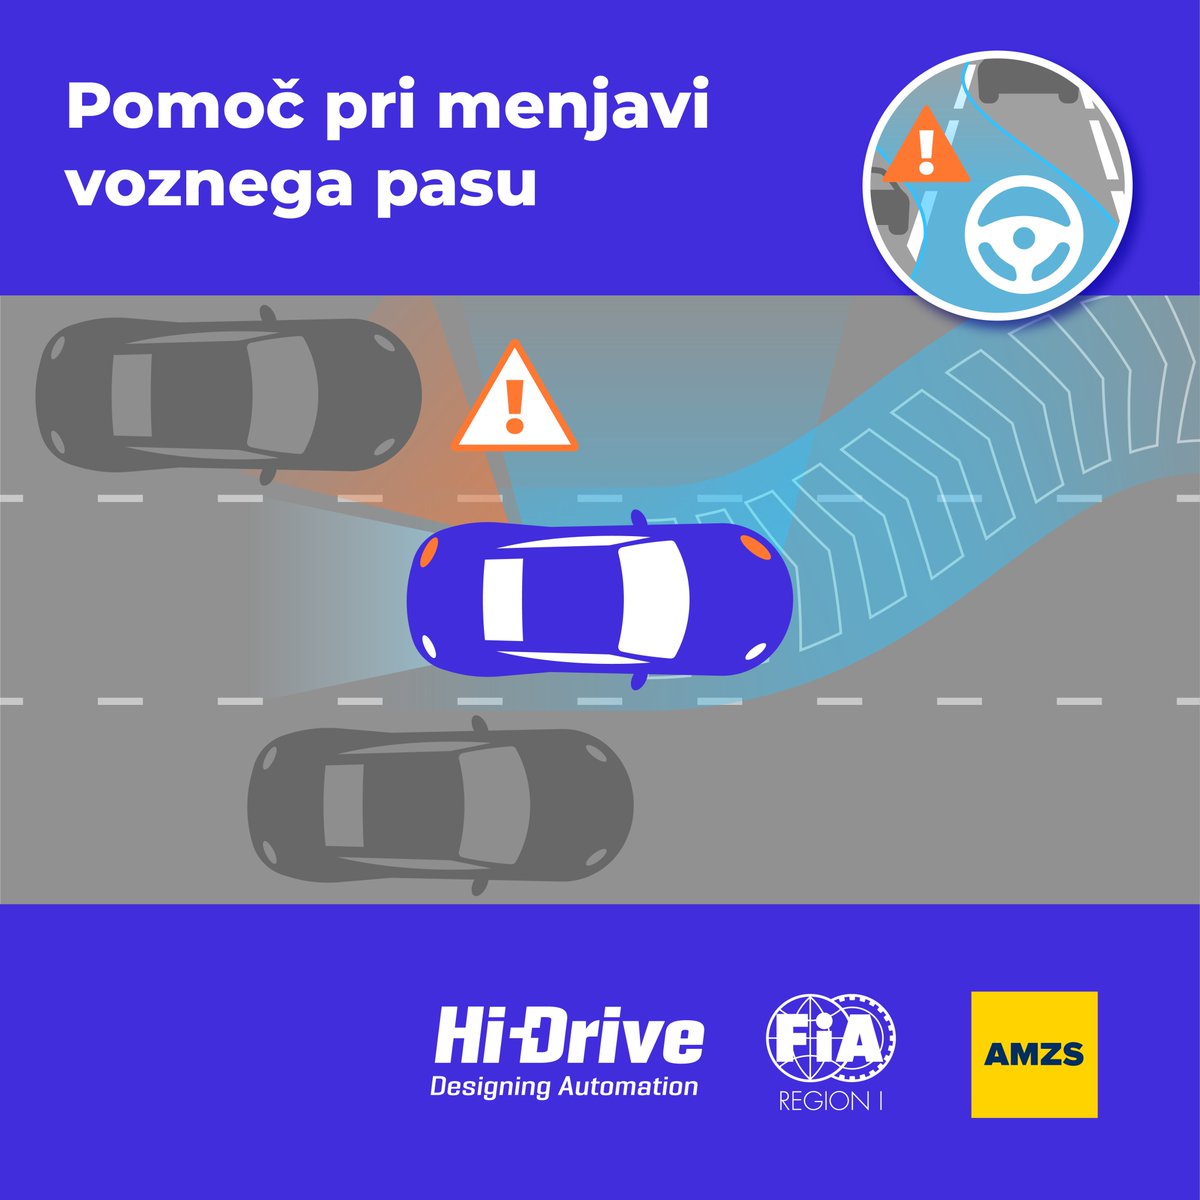 Predstavljamo nov vozniški pripomoček iz kampanje #HiDrive. Ta je še posebej koristen na avtocestah. Ko boste vključili smernik za zamenjavo voznega pasu, bo sistem poskrbel za varen premik. @FIARegionI @_HiDrive_